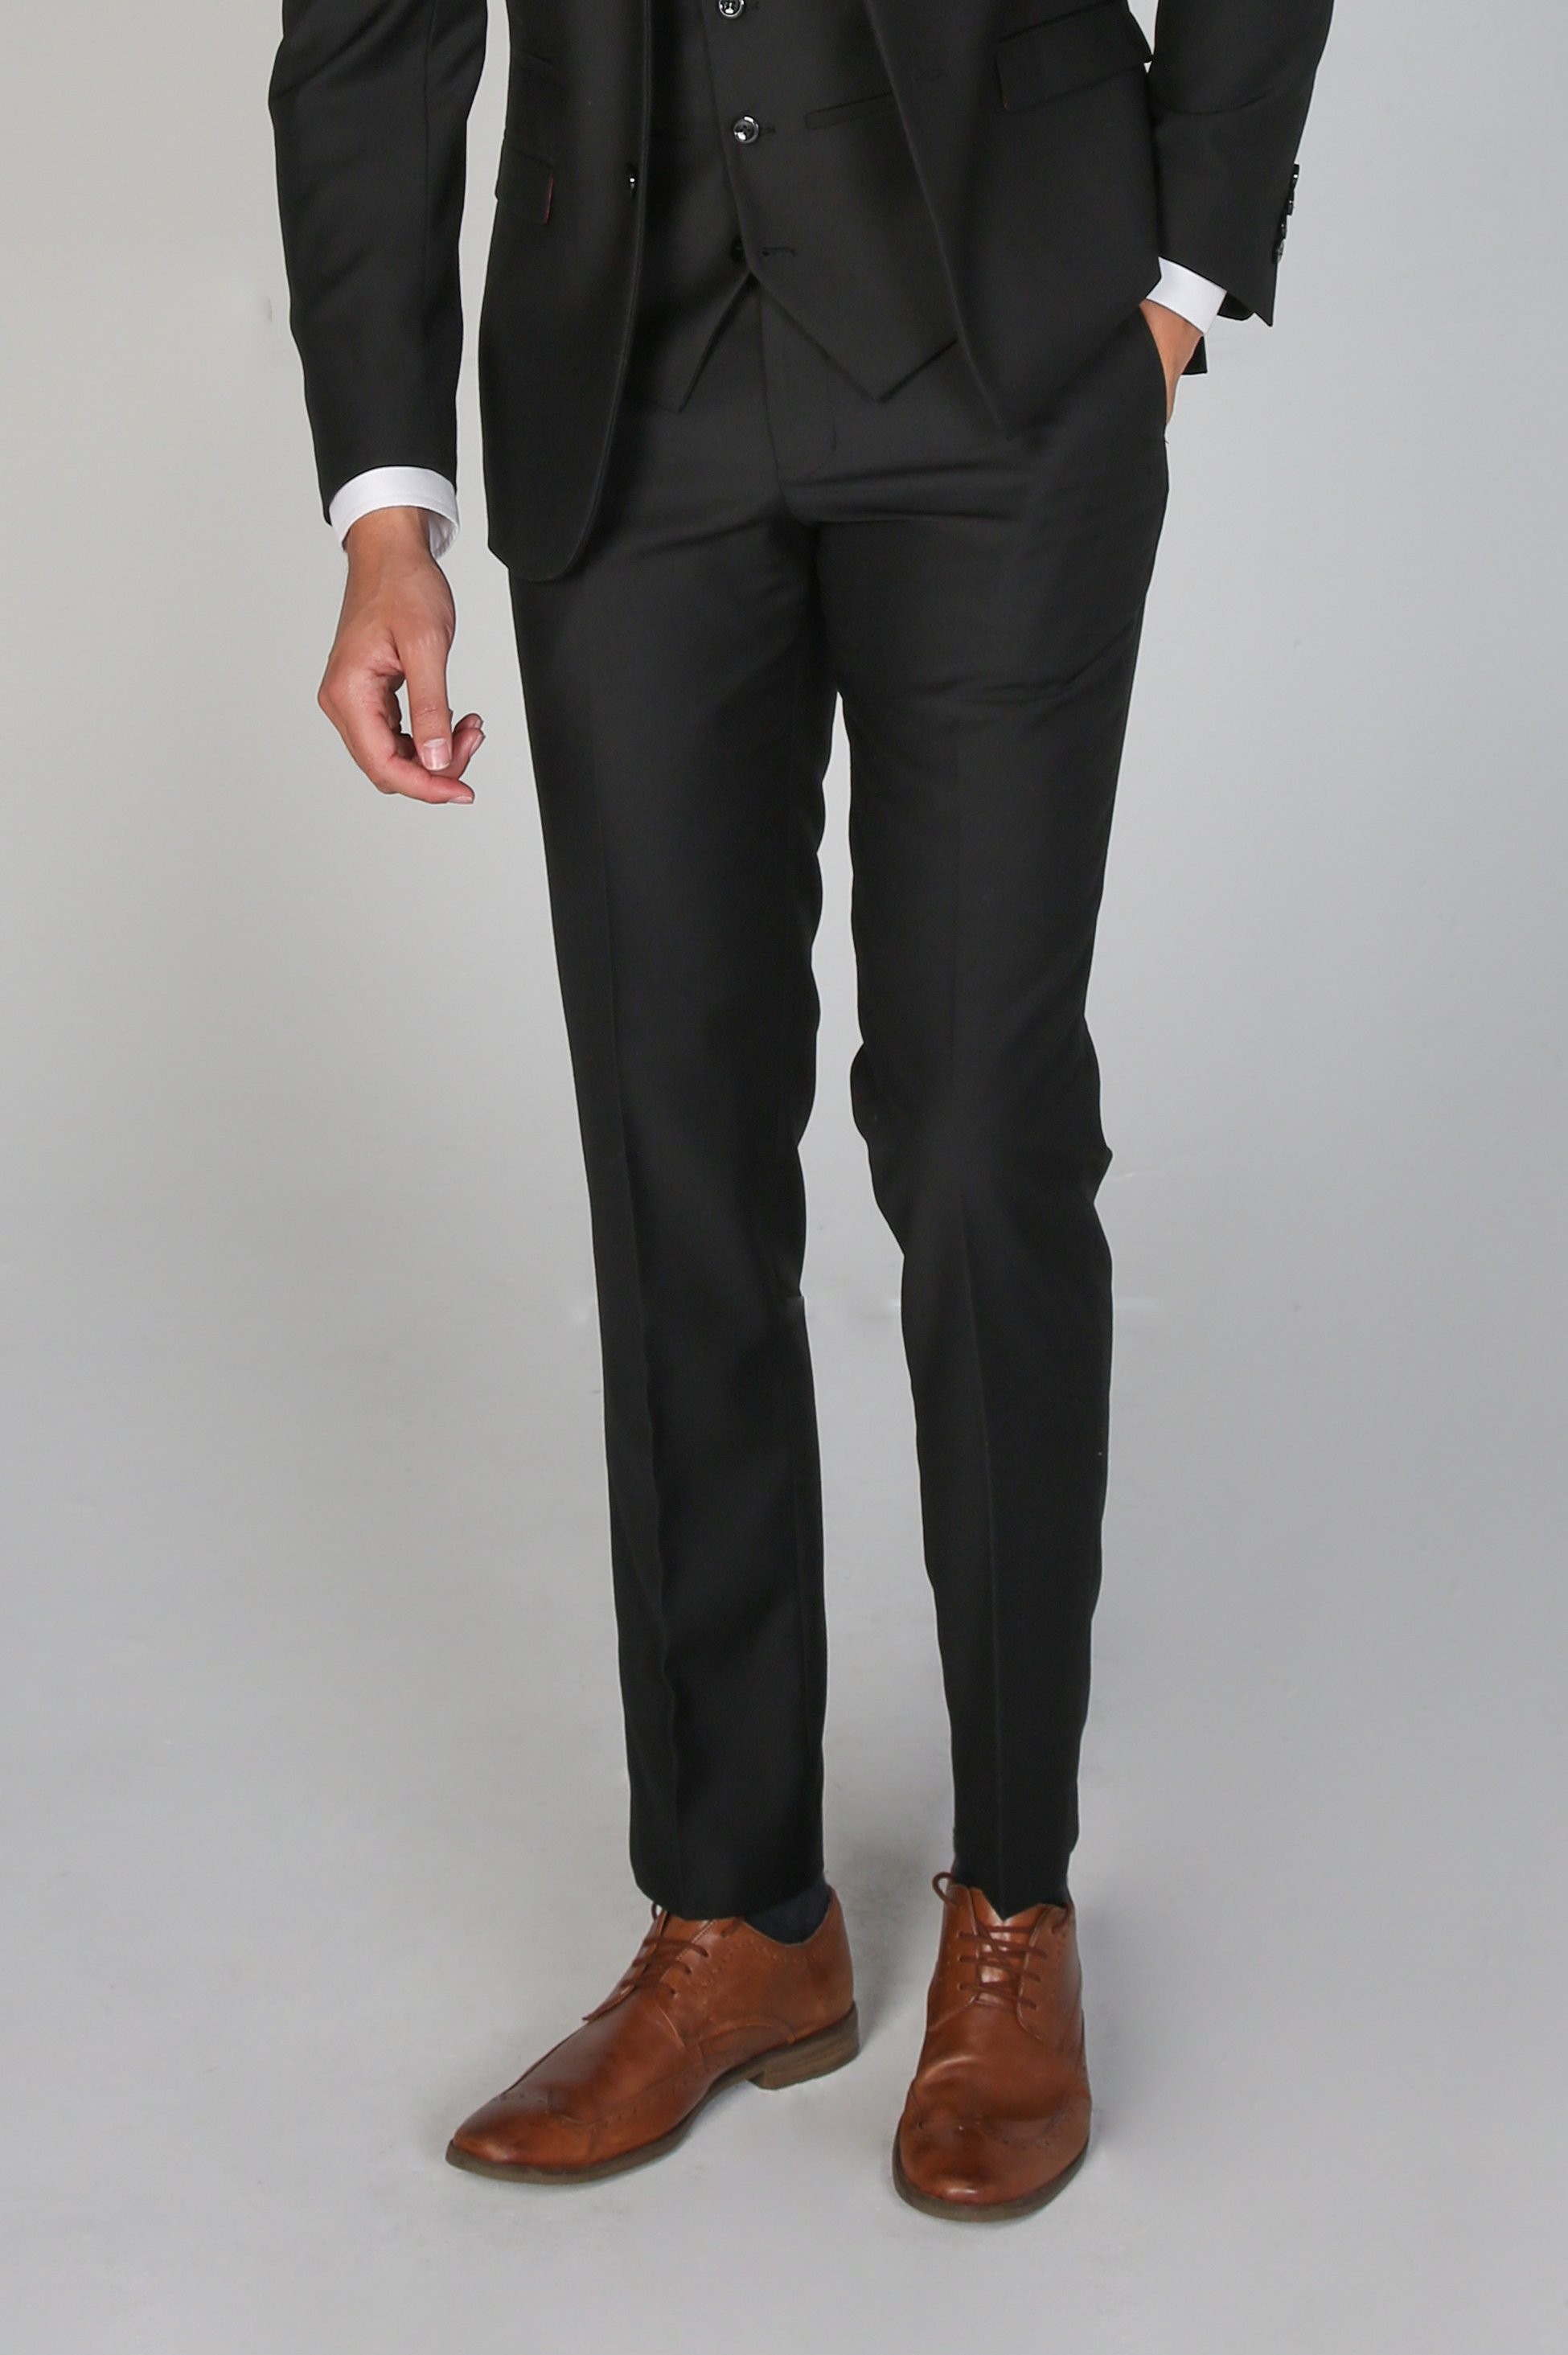 Men's Tailored Fit Black Pants - PARKER